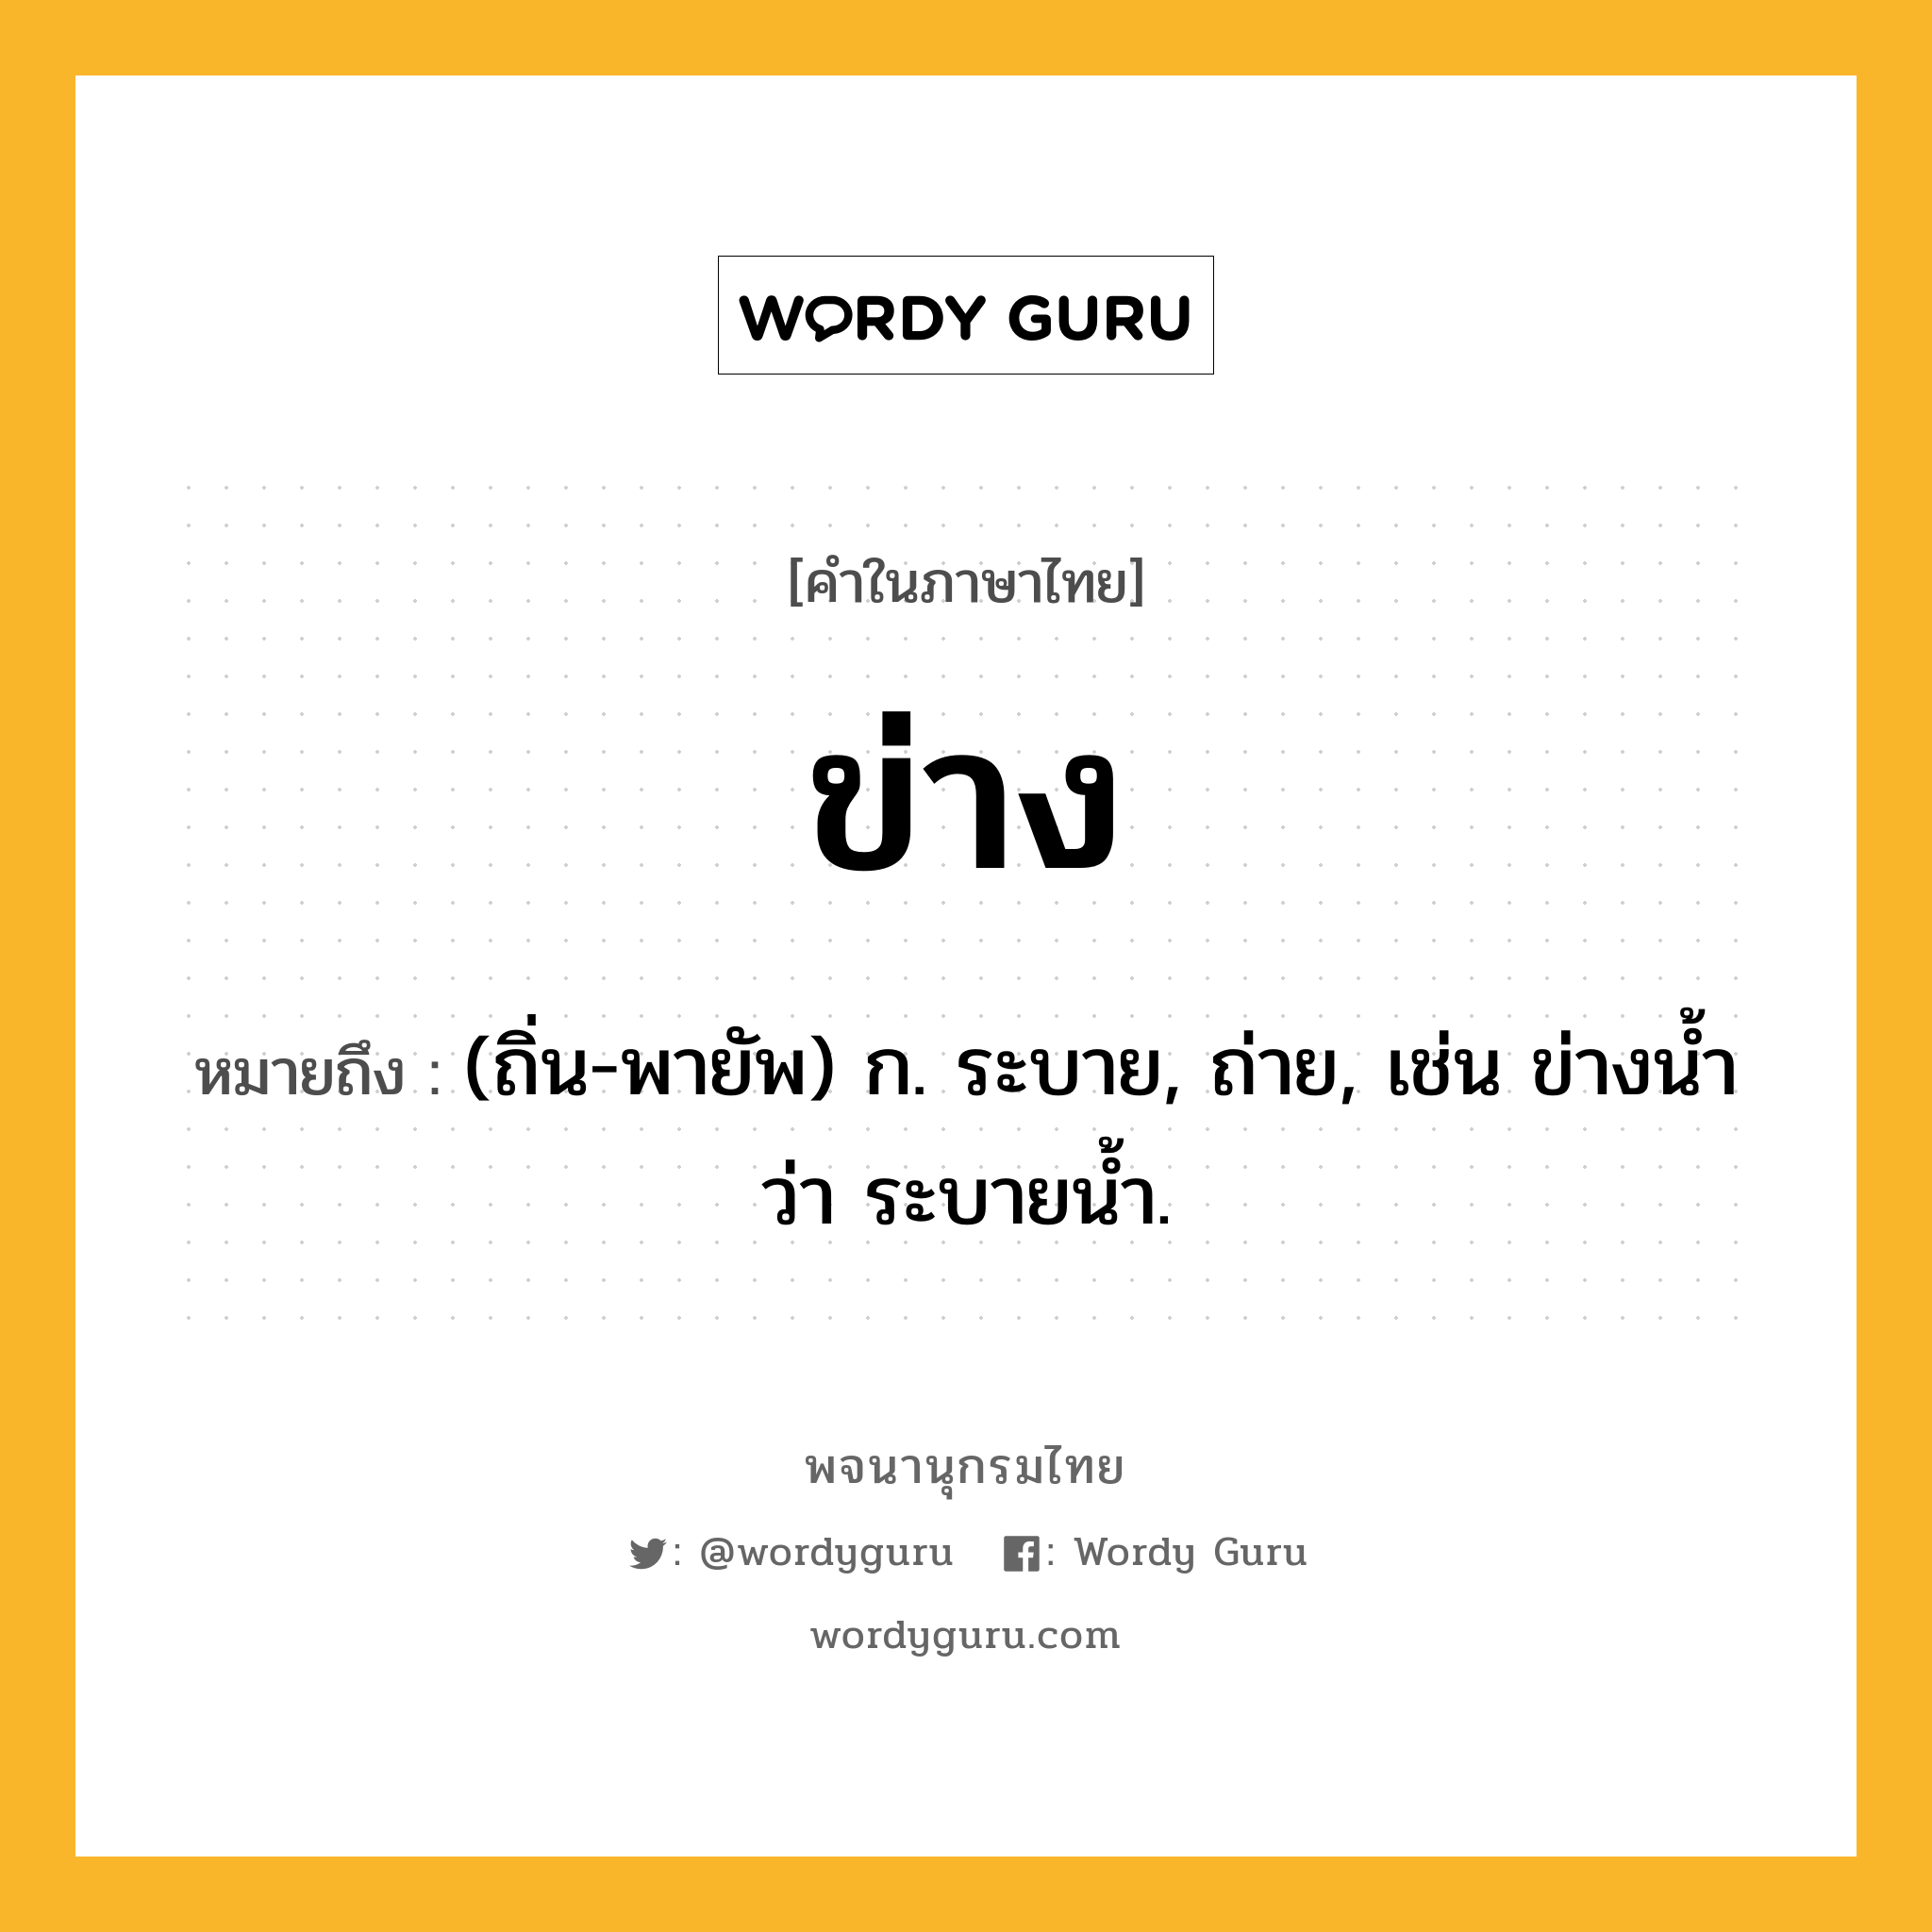 ข่าง หมายถึงอะไร?, คำในภาษาไทย ข่าง หมายถึง (ถิ่น-พายัพ) ก. ระบาย, ถ่าย, เช่น ข่างนํ้า ว่า ระบายนํ้า.